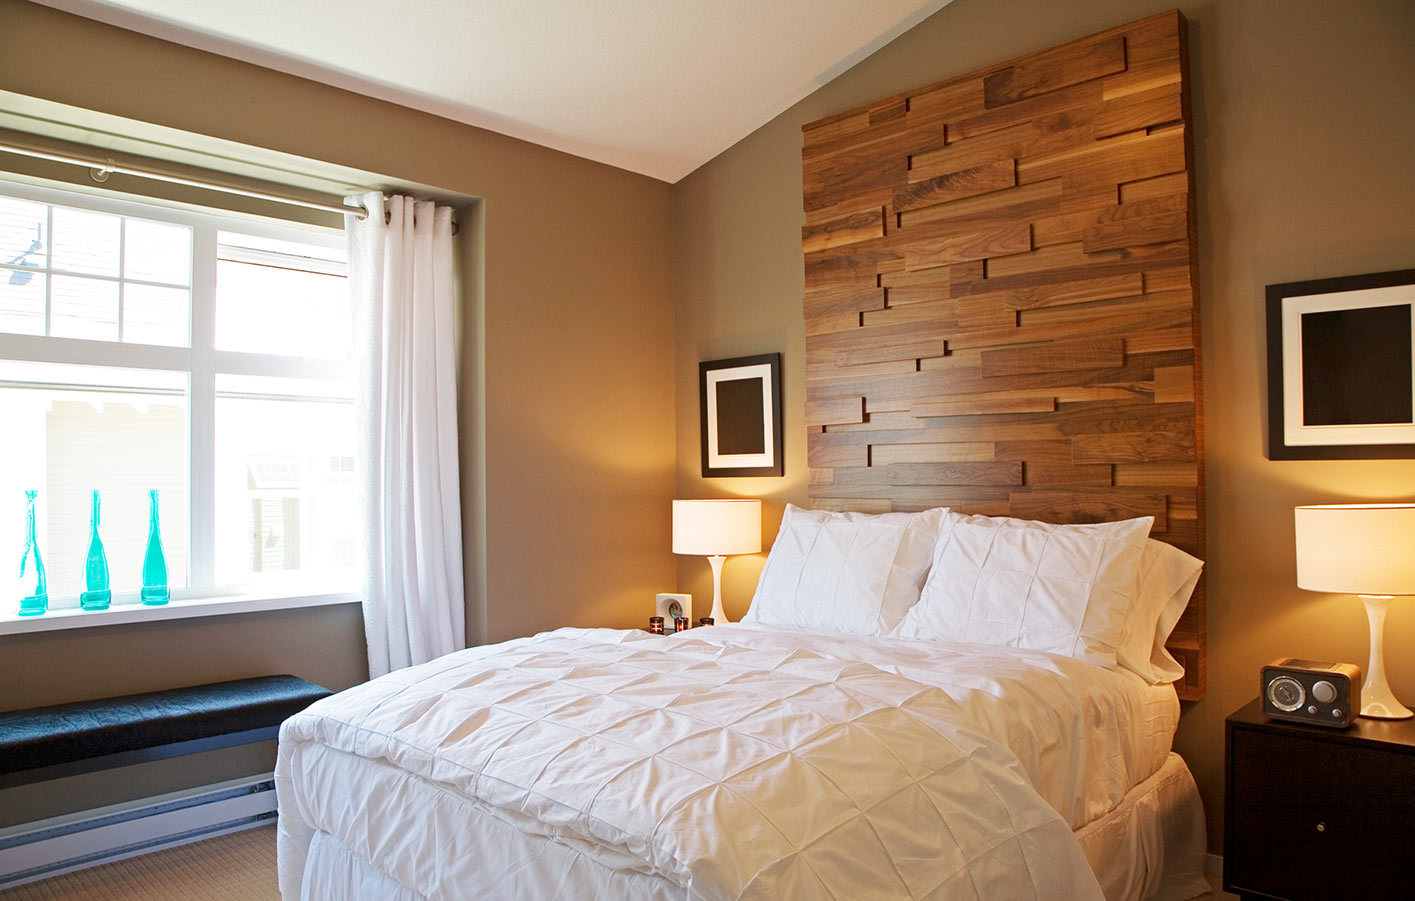 Blick in ein Schlafzimmer mit dunklen Holzpaneelen an der Wand